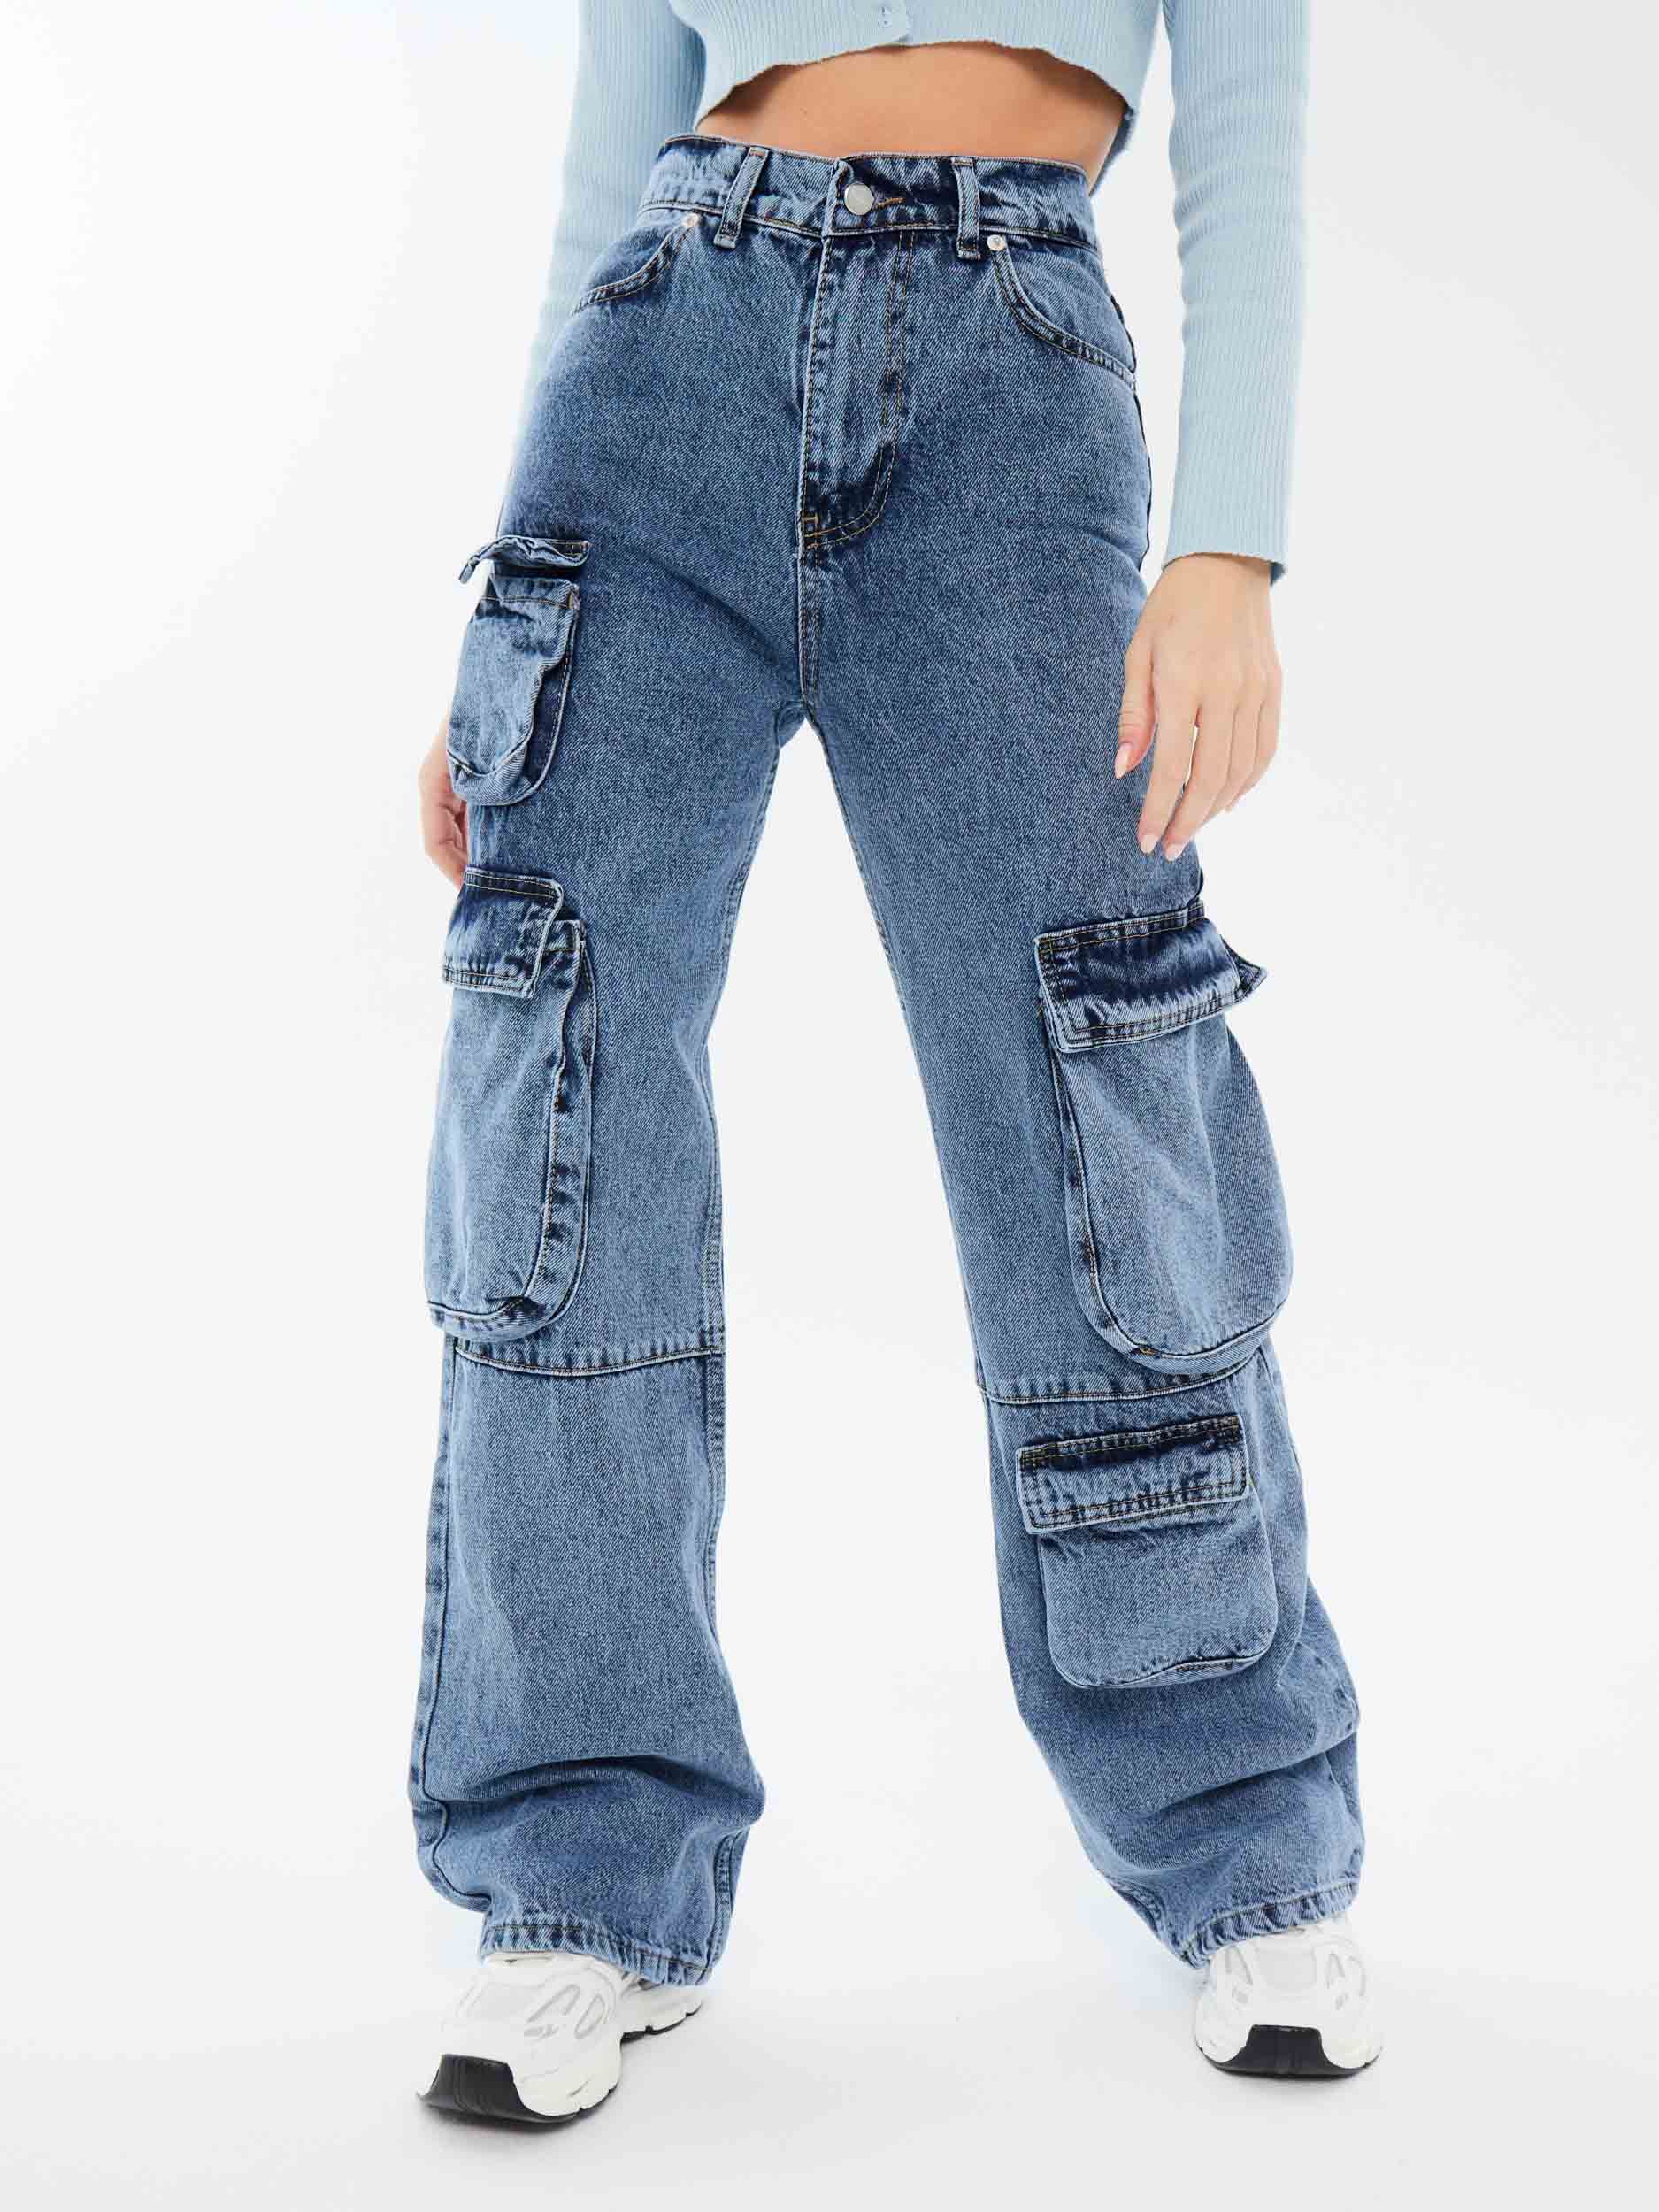 джинсы карго женские фото